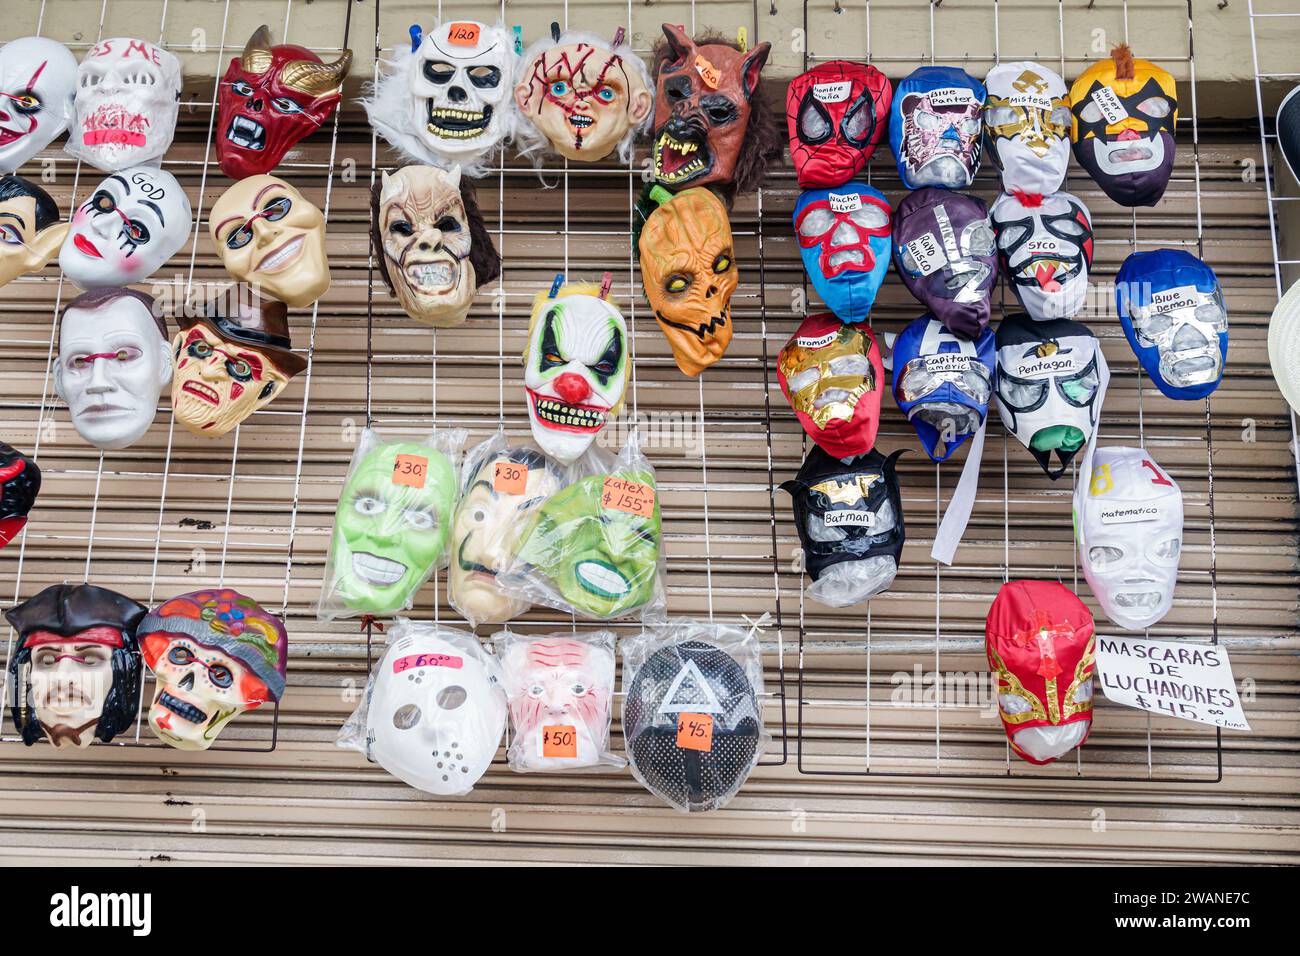 Merida Mexico, centro storico storico, maschere di Halloween luchadores wrestling, negozio di negozi, mercato mercantile, vendita Foto Stock